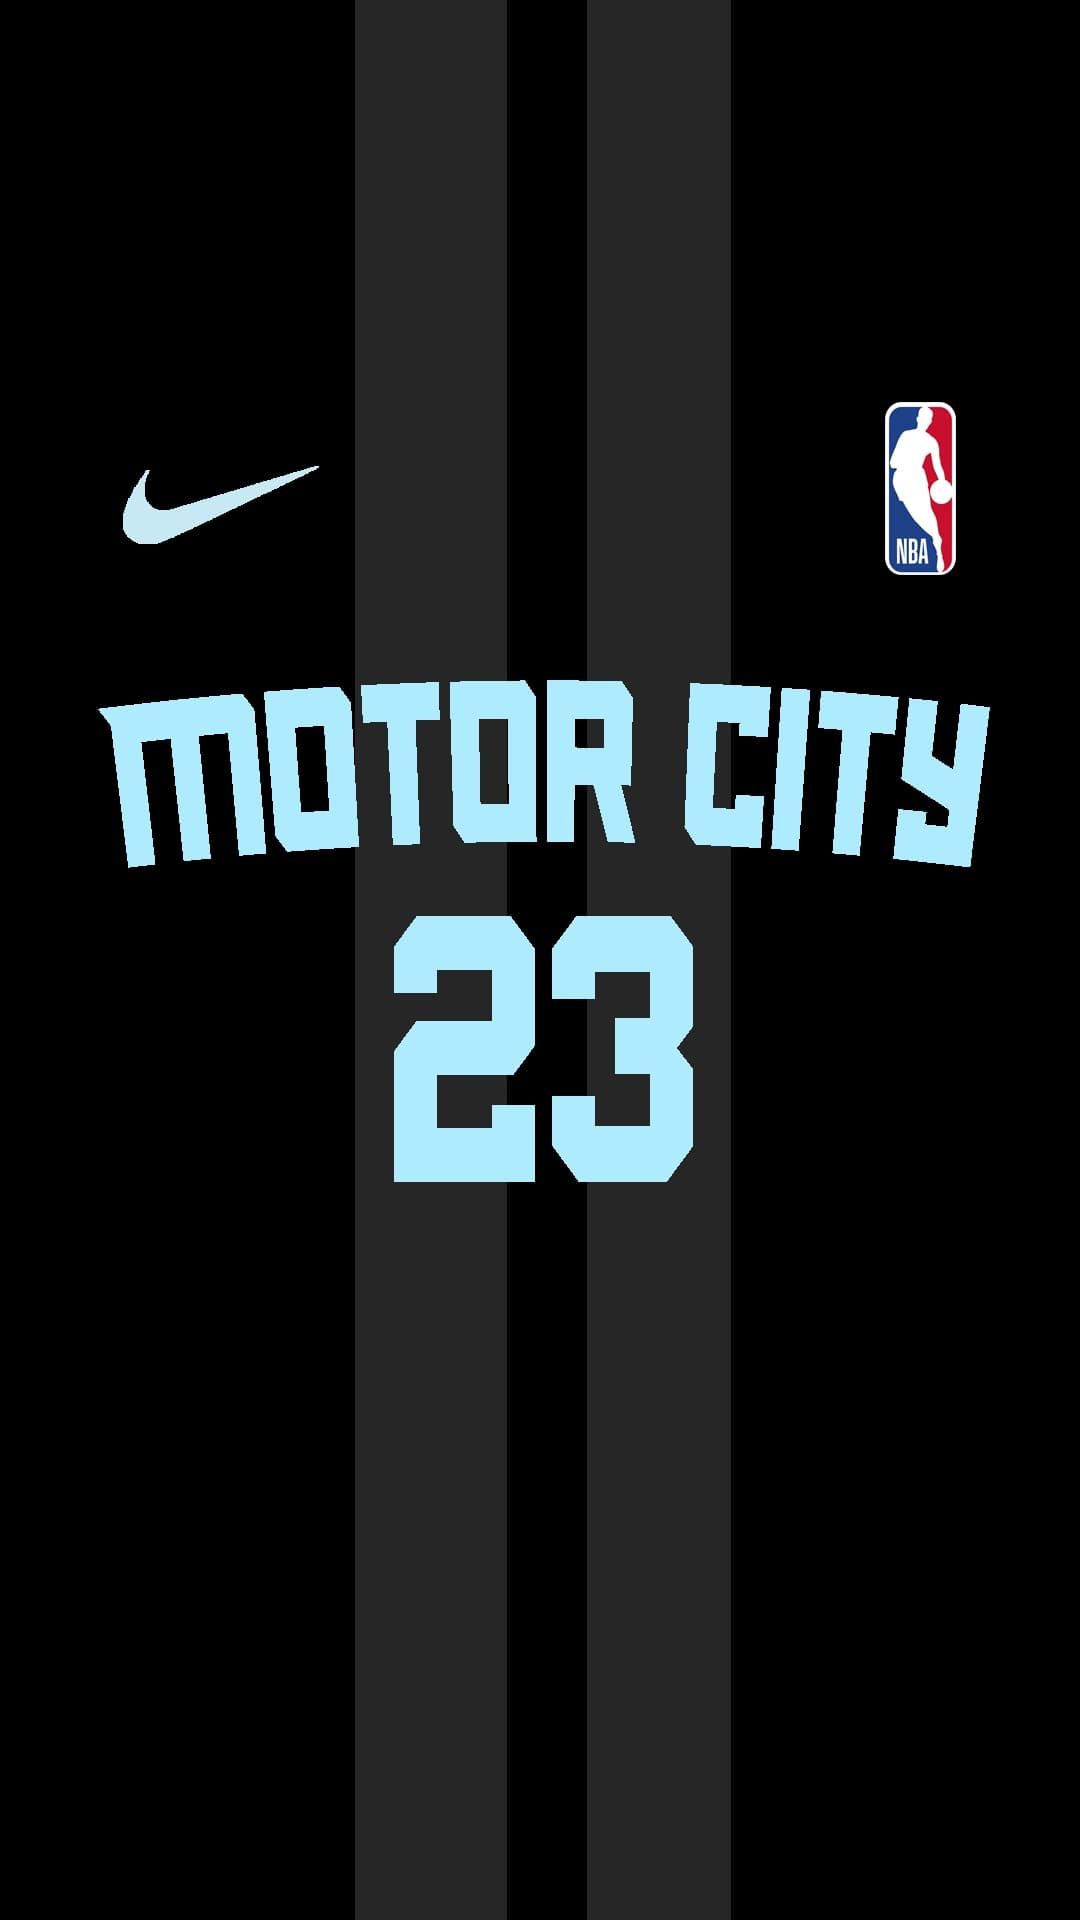 Pistons Griffin. Nba jersey, Basketball wallpaper, Nba